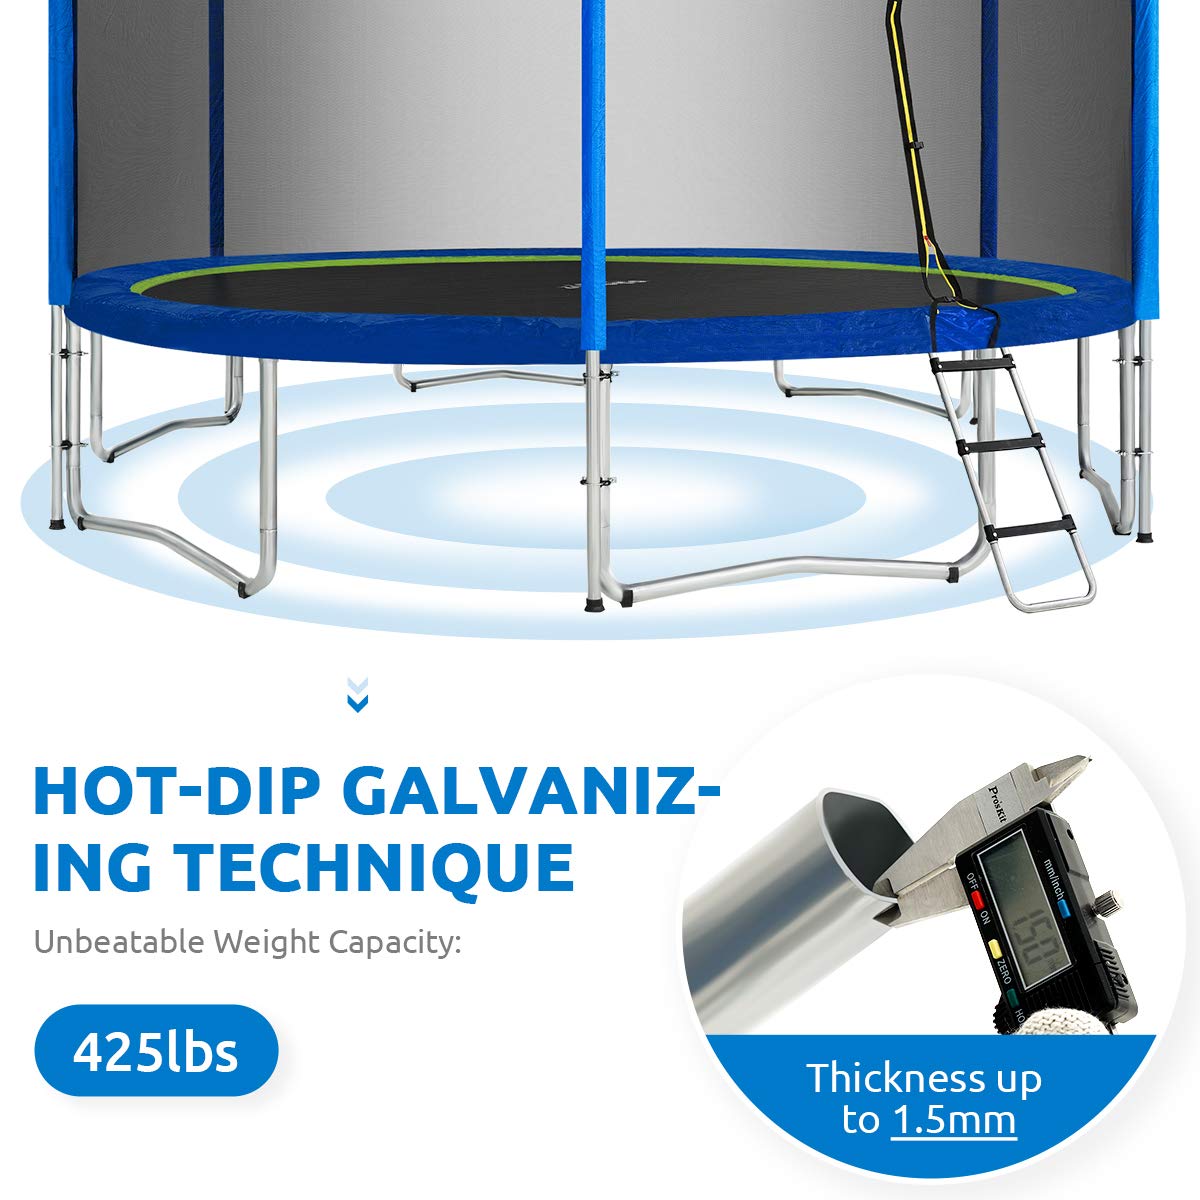 Hot-dip Galvanizing technique